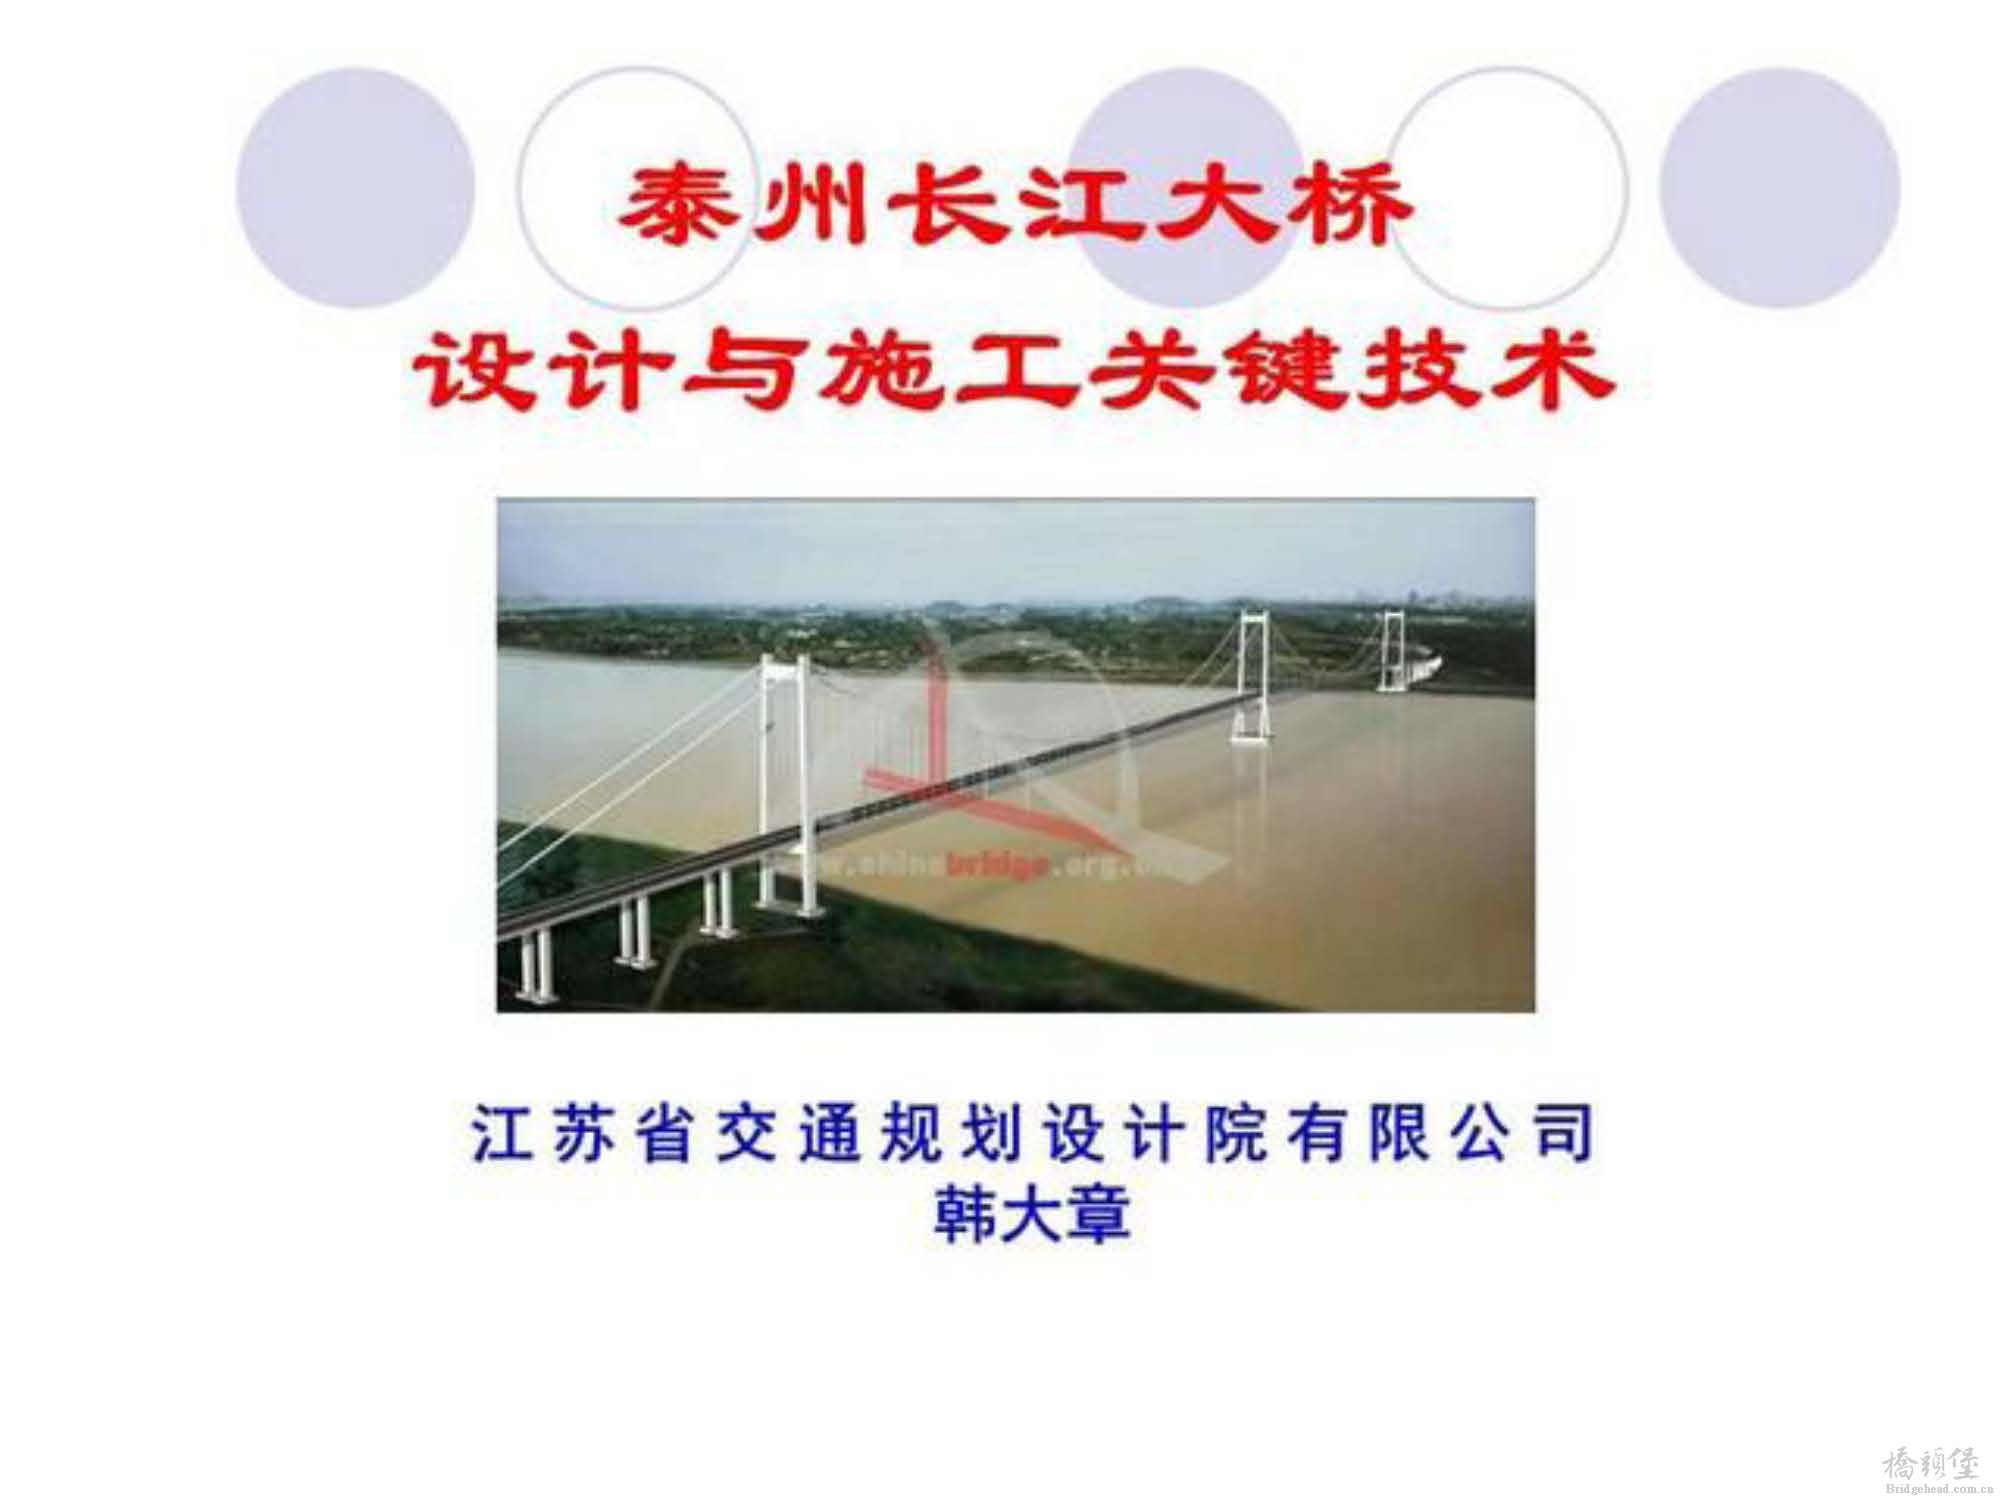 泰州长江大桥设计与施工关键技术_页面_01.jpg